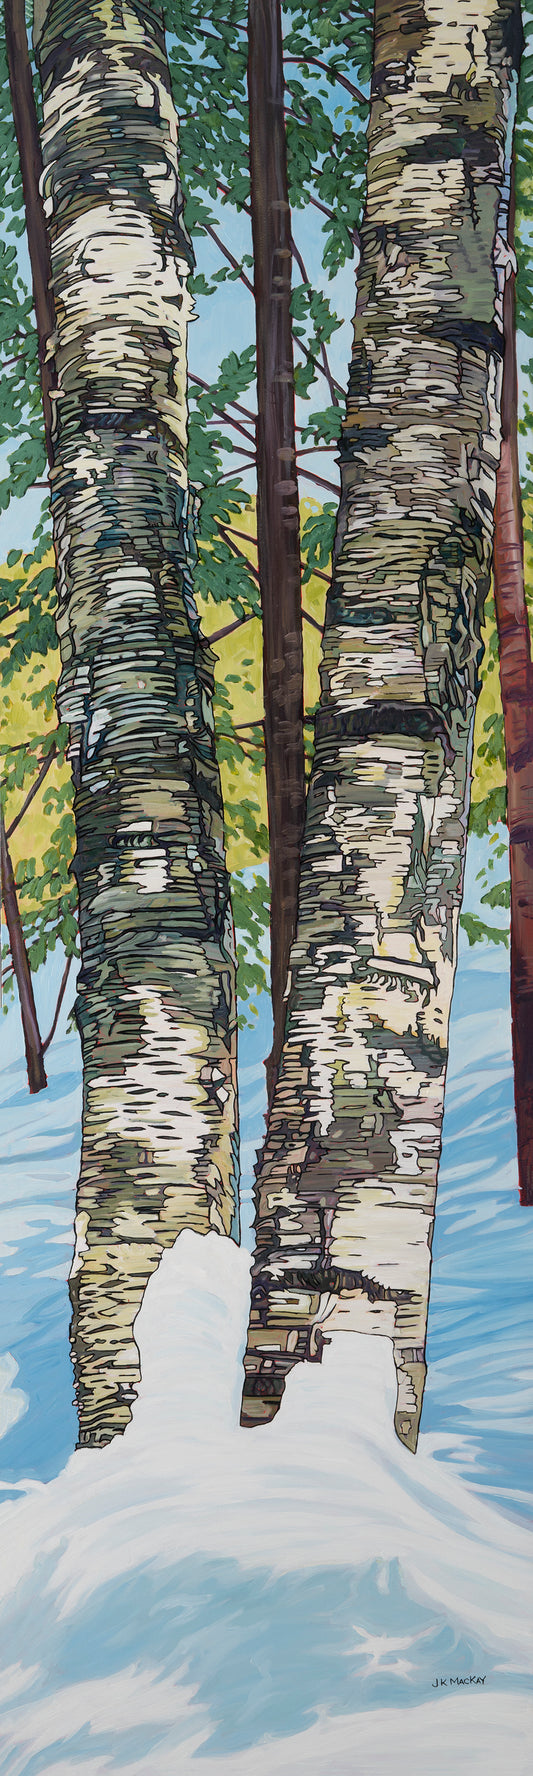 Birch Buddies 2 by Janet K. MacKay